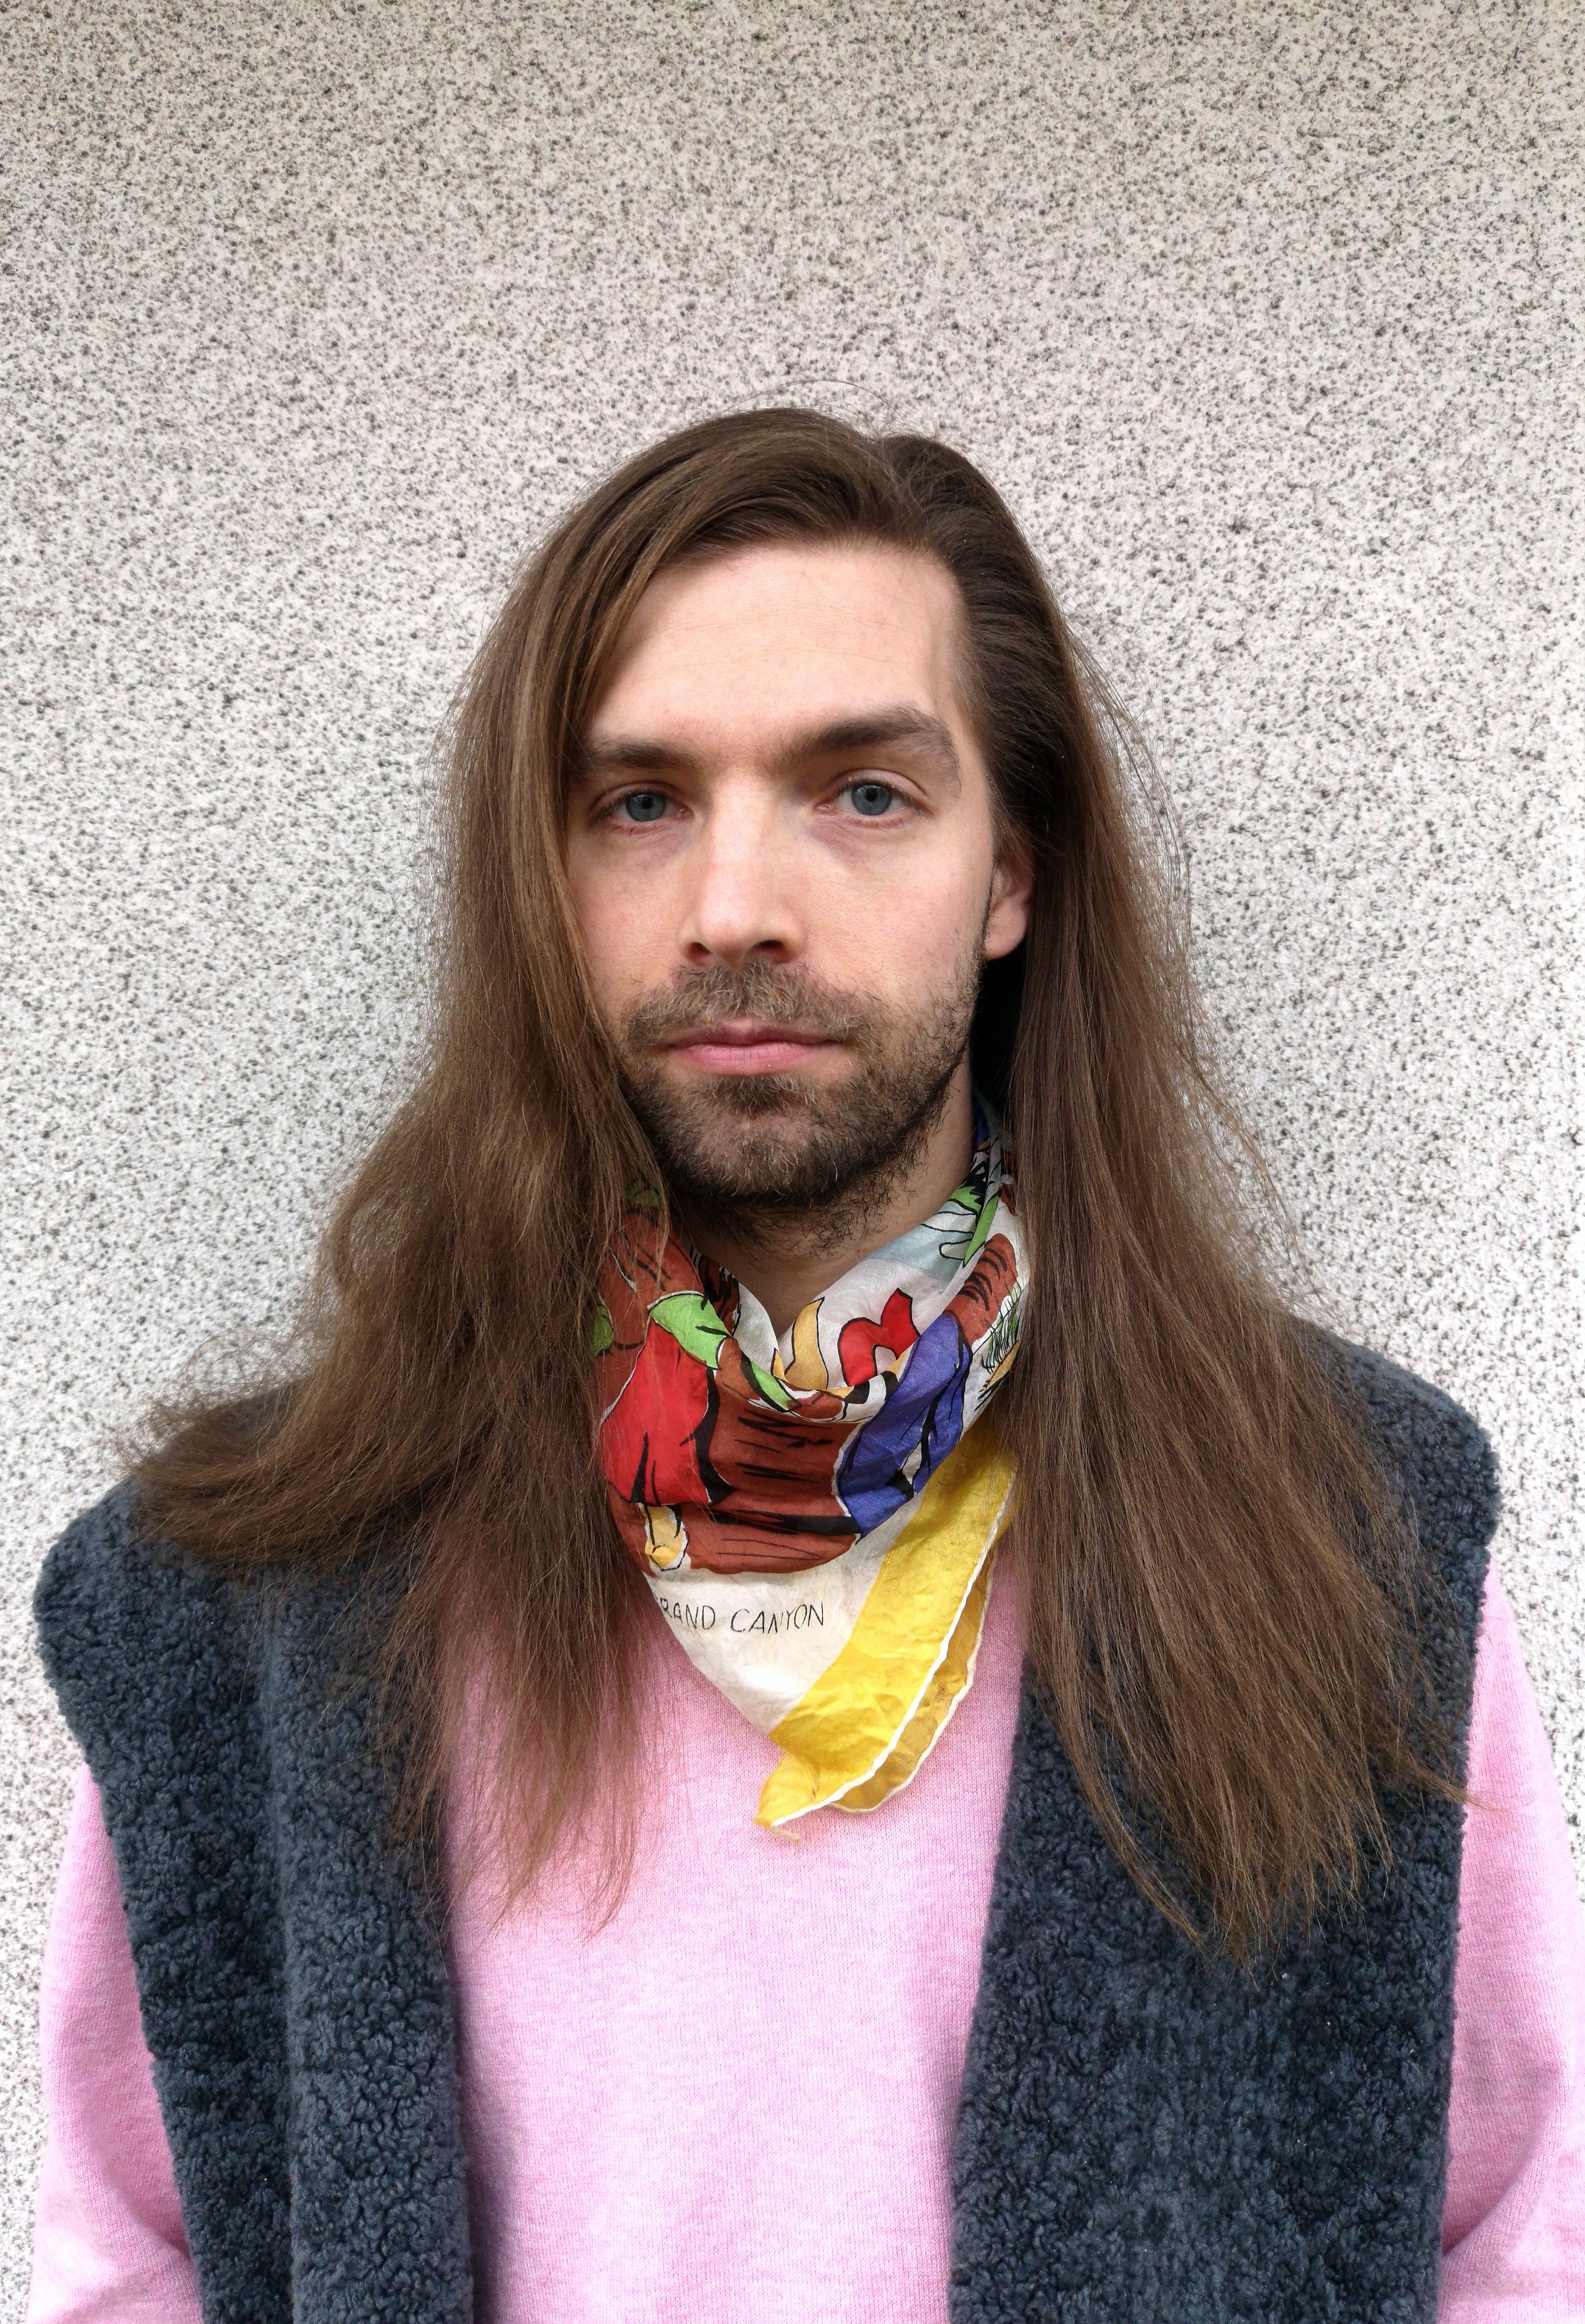 Konstnären Matti Sumari, porträtt. Långt, brunt hår och iklädd en rosa tröja med väst och en gul scarf runt halsen.